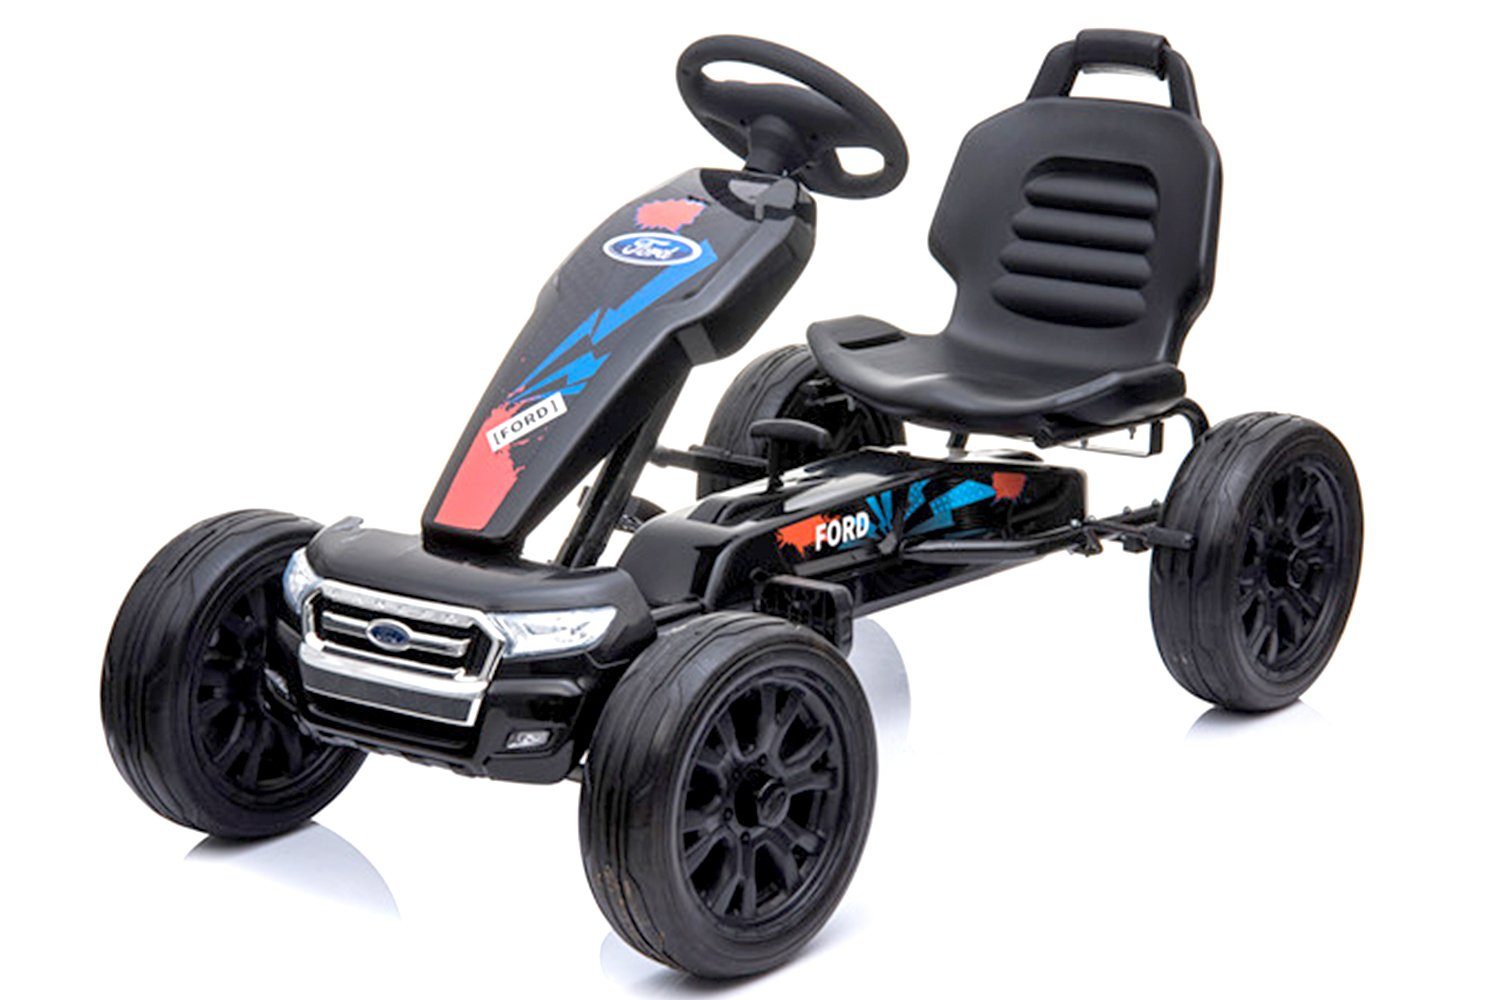 Kidix Tretfahrzeug Lizenz Ford Ranger Go Cart Kinder Kinderauto Kinderfahrzeug Tretauto Schwarz